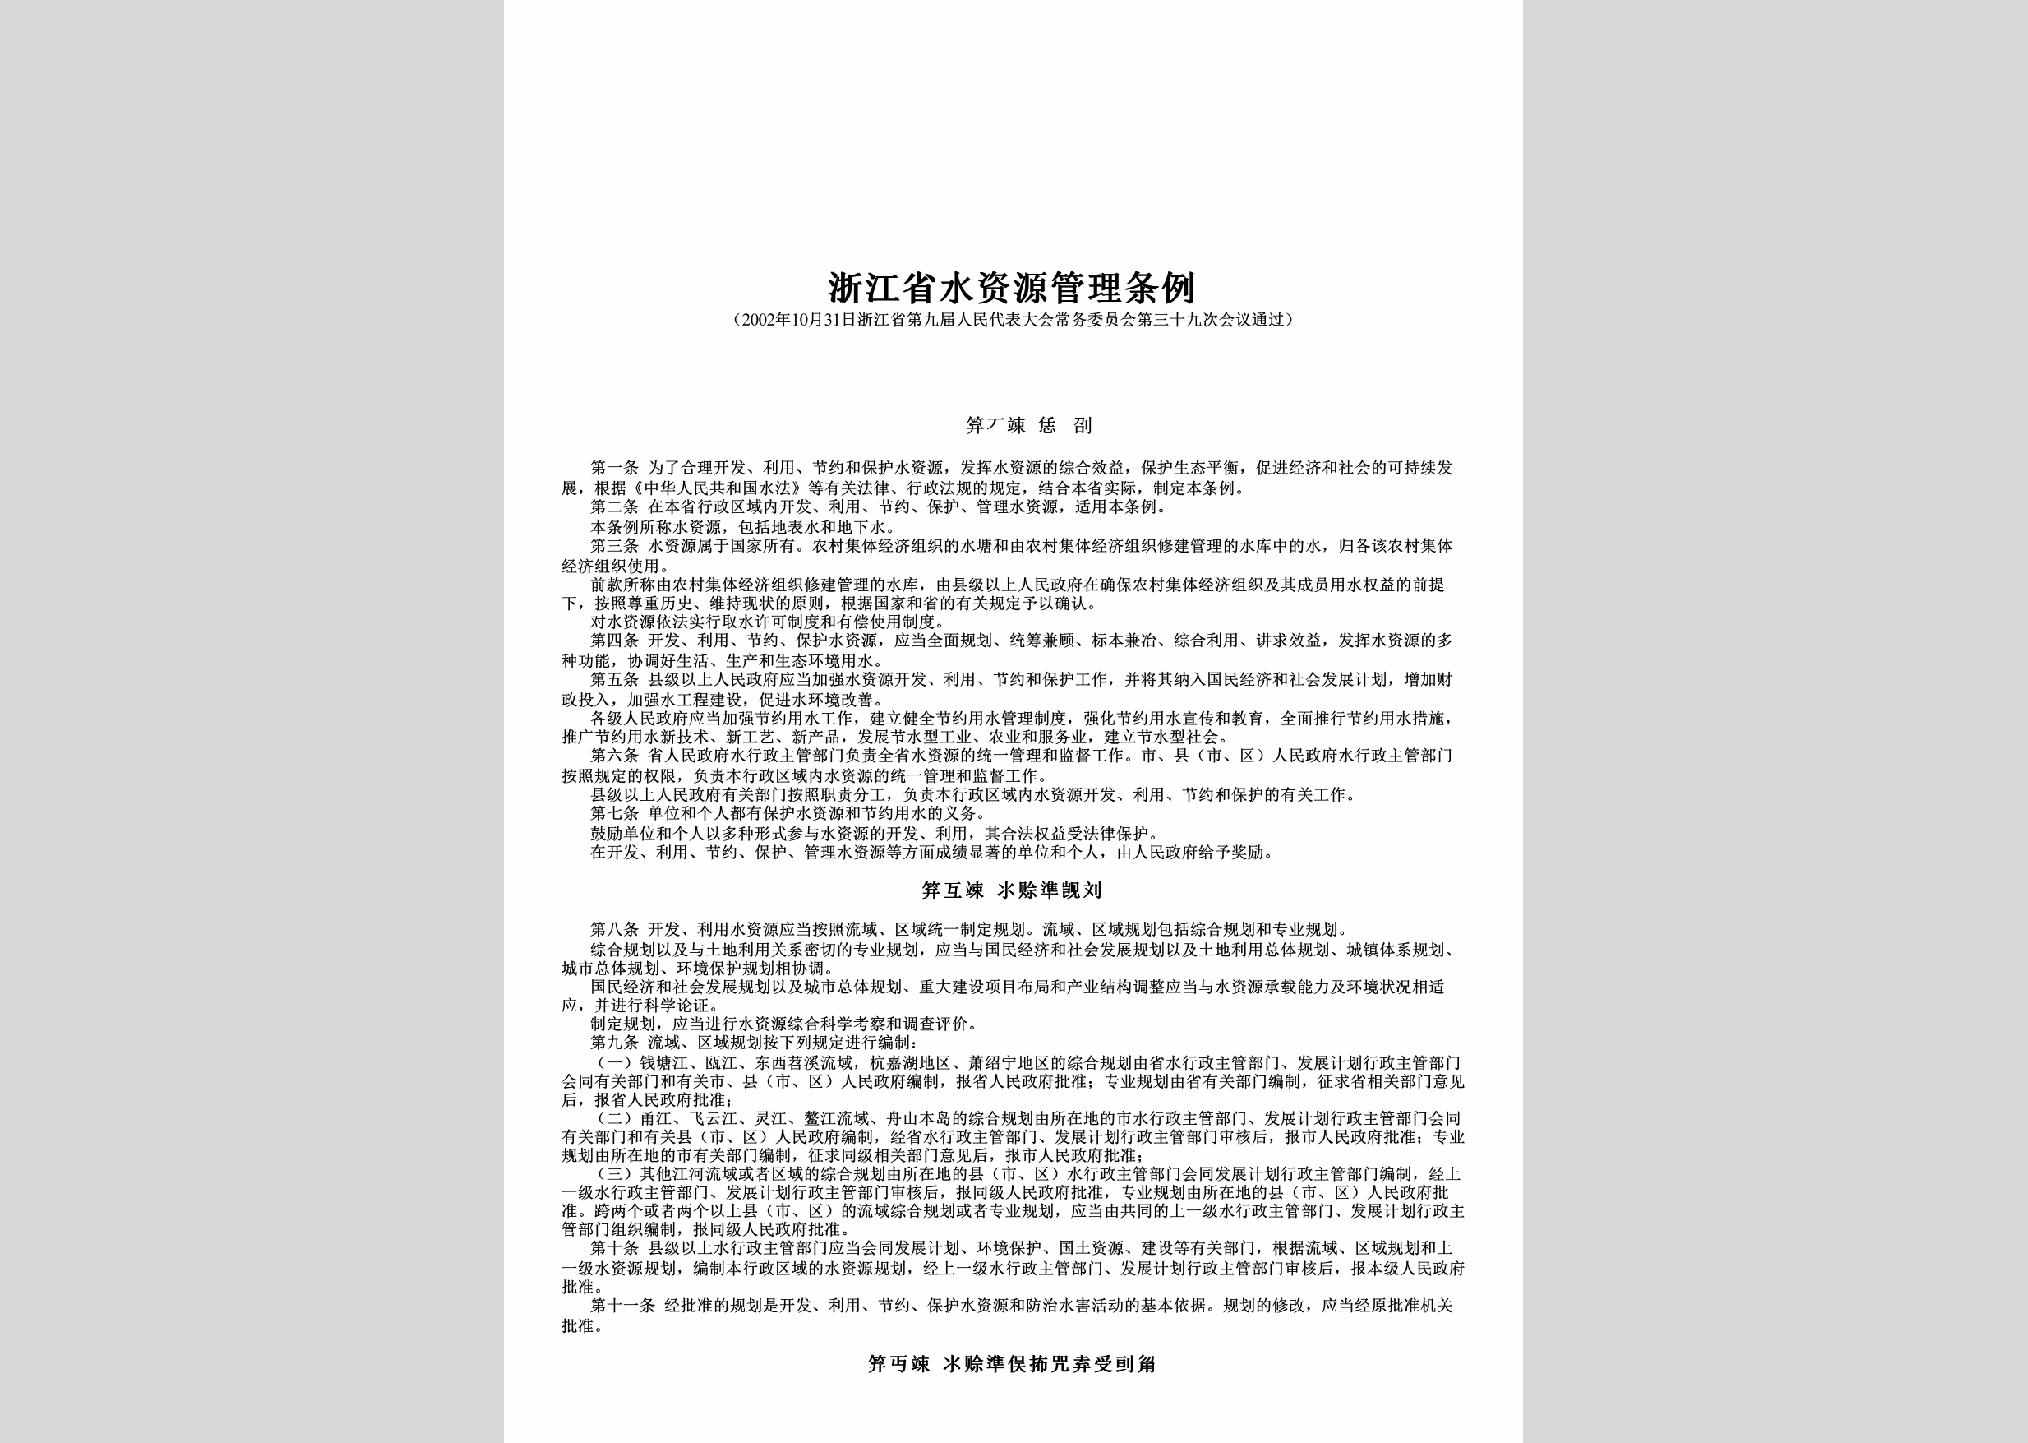 ZJ-SZYGLTL-2002：浙江省水资源管理条例